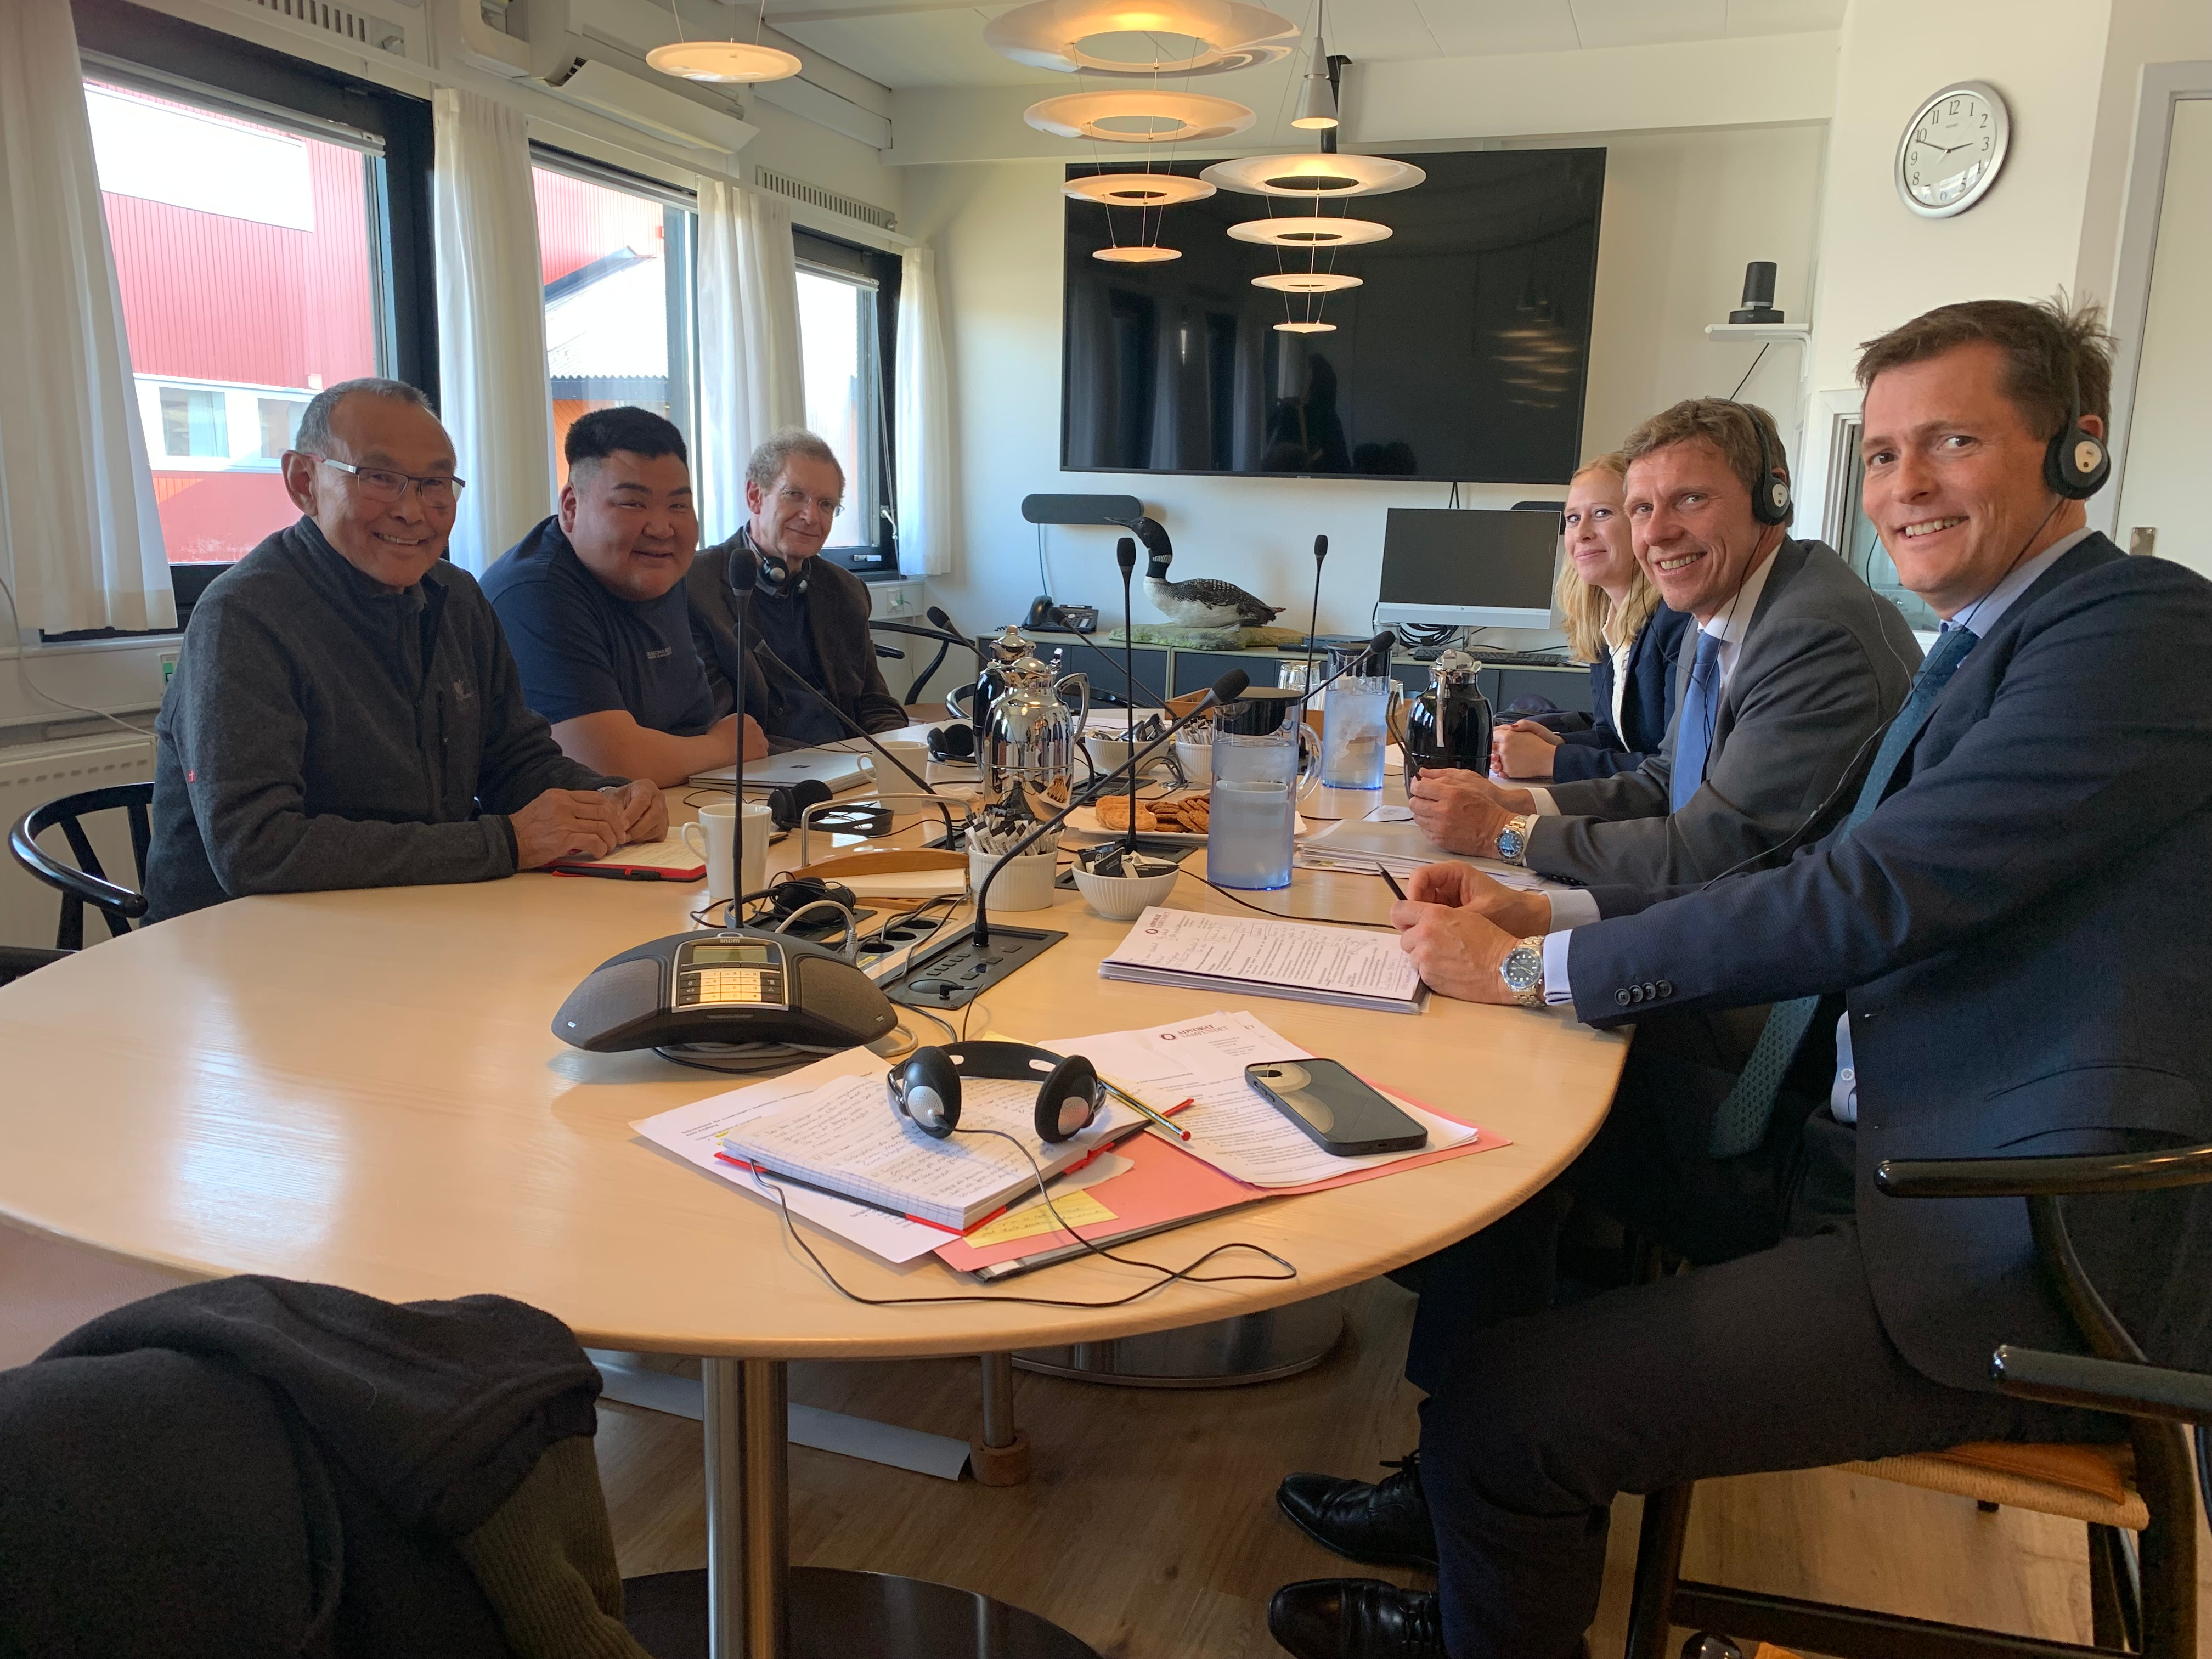 Under besøget i Grønlands hovedstad var der møde med to medlemmer af Inatsisartuts Lovudvalg, næstformand Emanuel Nüko fra partiet Naleraq og Harald Bianco fra partiet Inuit Ataqatigiit.